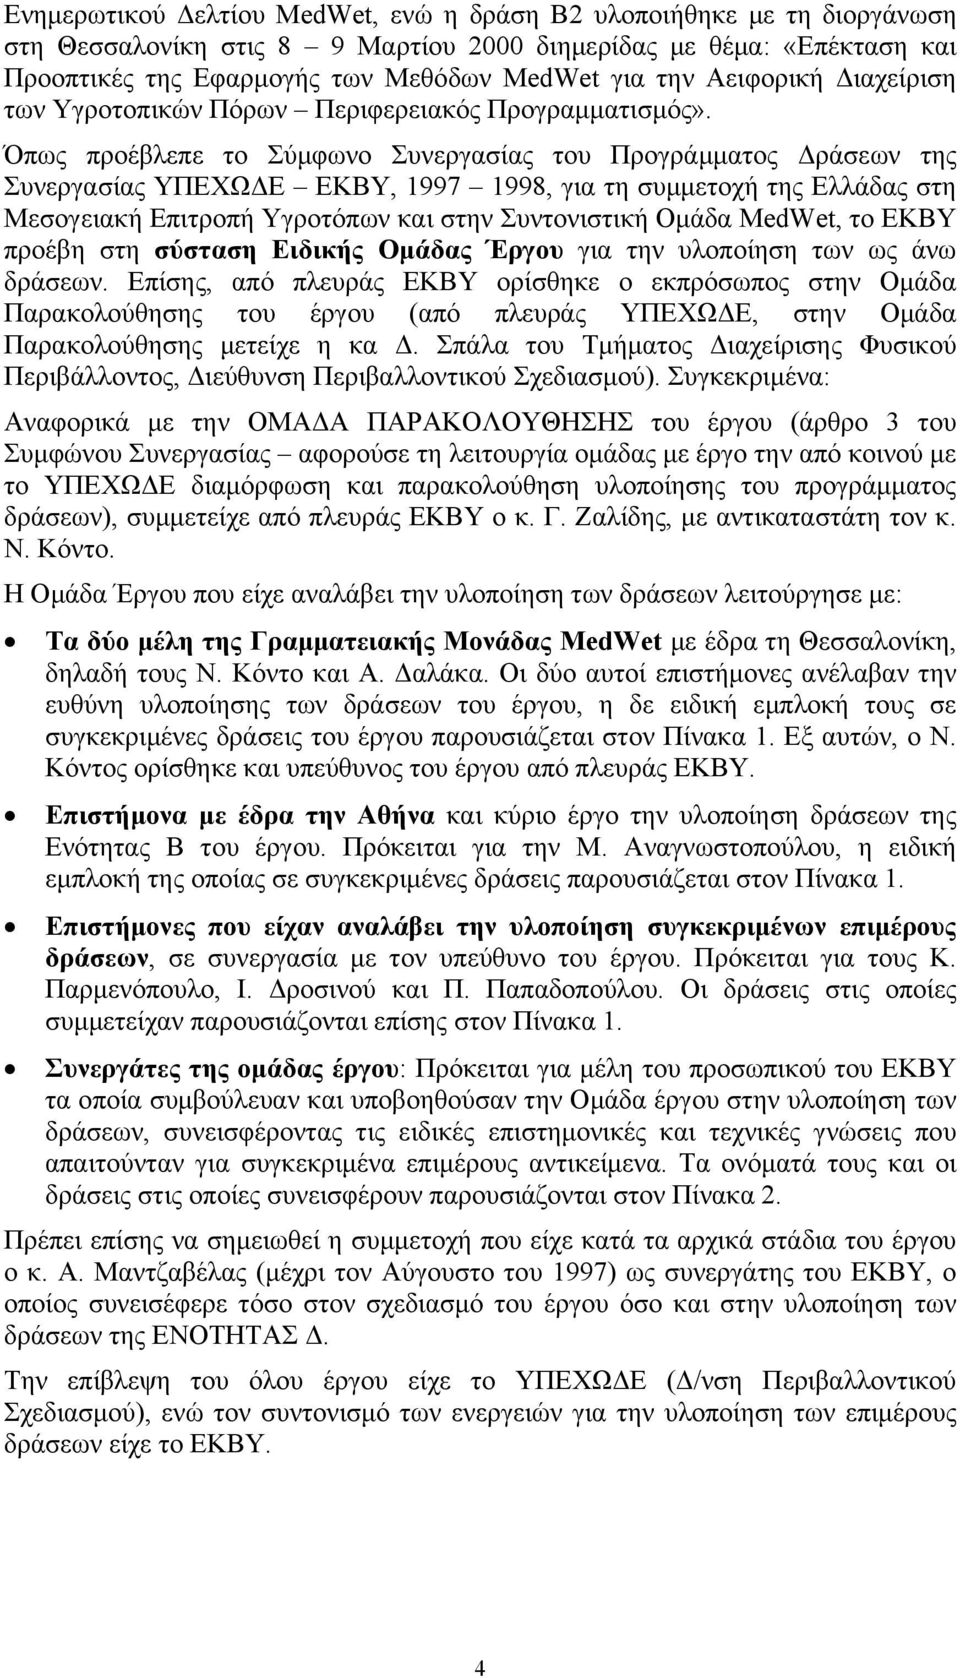 Όπως προέβλεπε το Σύμφωνο Συνεργασίας του Προγράμματος Δράσεων της Συνεργασίας ΥΠΕΧΩΔΕ ΕΚΒΥ, 1997 1998, για τη συμμετοχή της Ελλάδας στη Μεσογειακή Επιτροπή Υγροτόπων και στην Συντονιστική Ομάδα